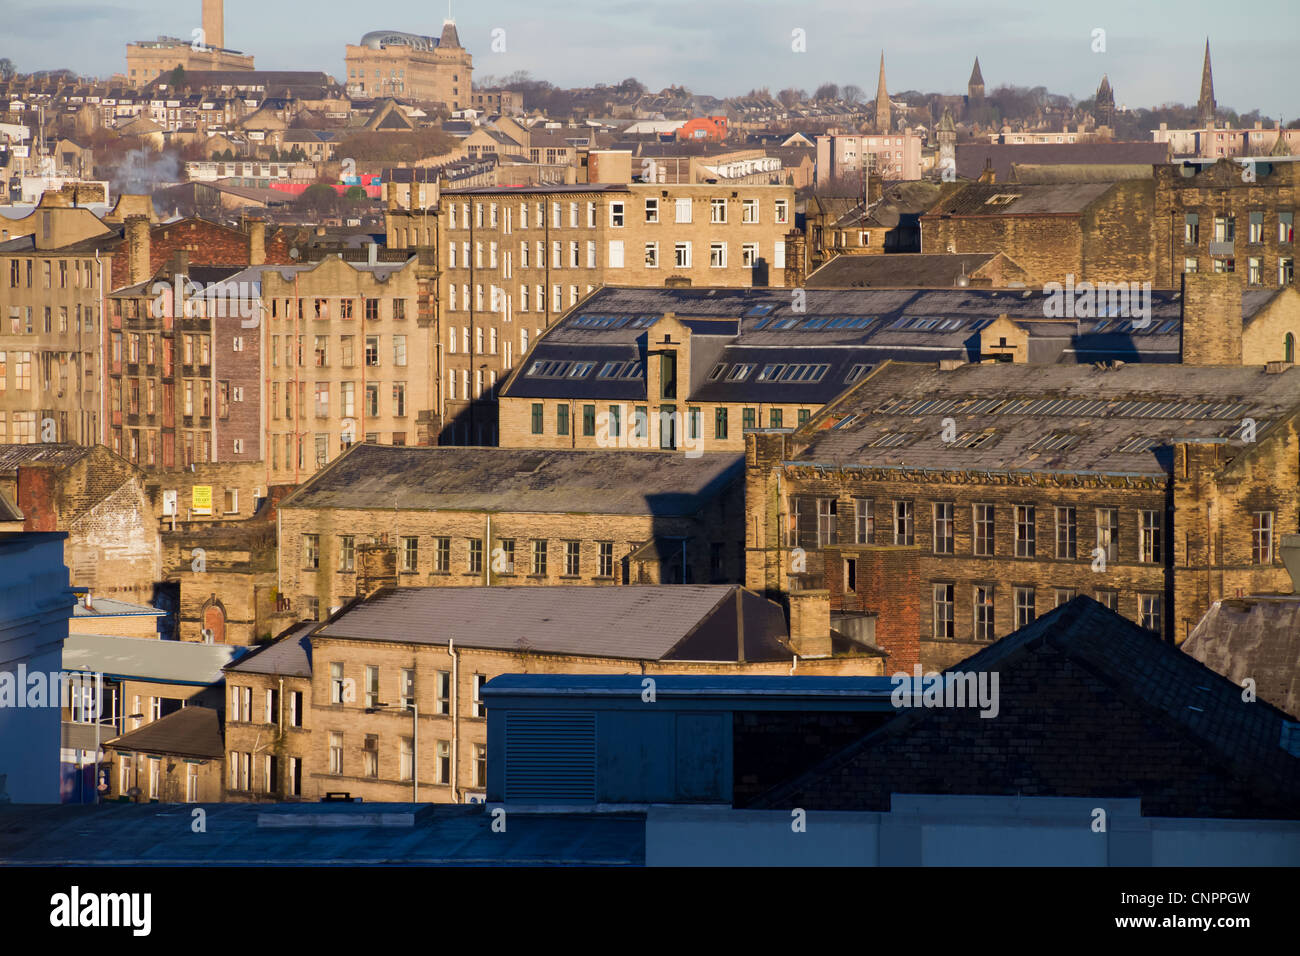 Vue sur le centre-ville de Bradford montrant les bâtiments, et lister moulin sur l'horizon. Banque D'Images